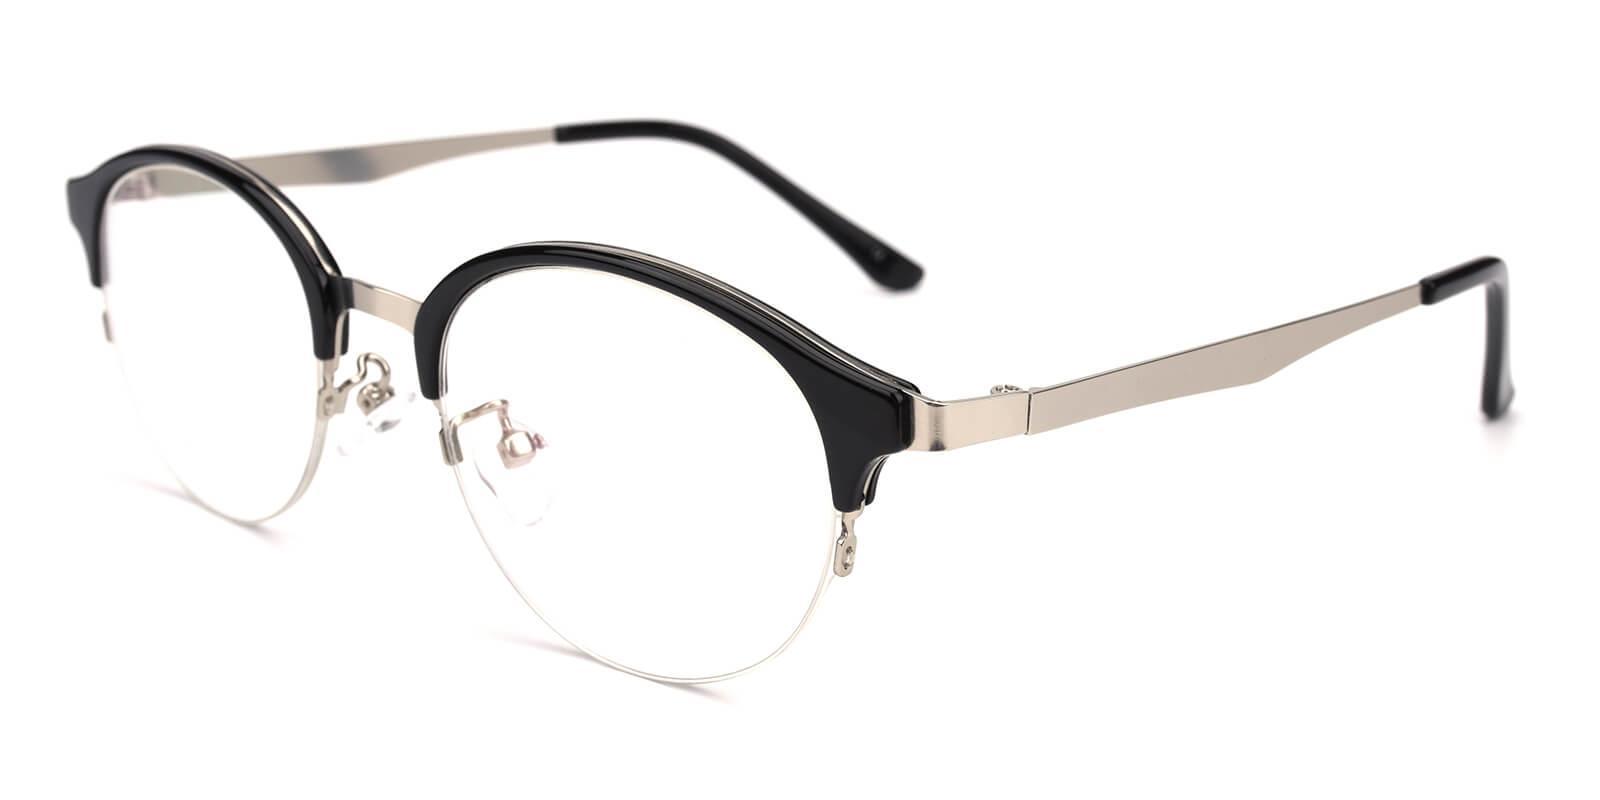 Dreamer Black Metal Eyeglasses , NosePads Frames from ABBE Glasses